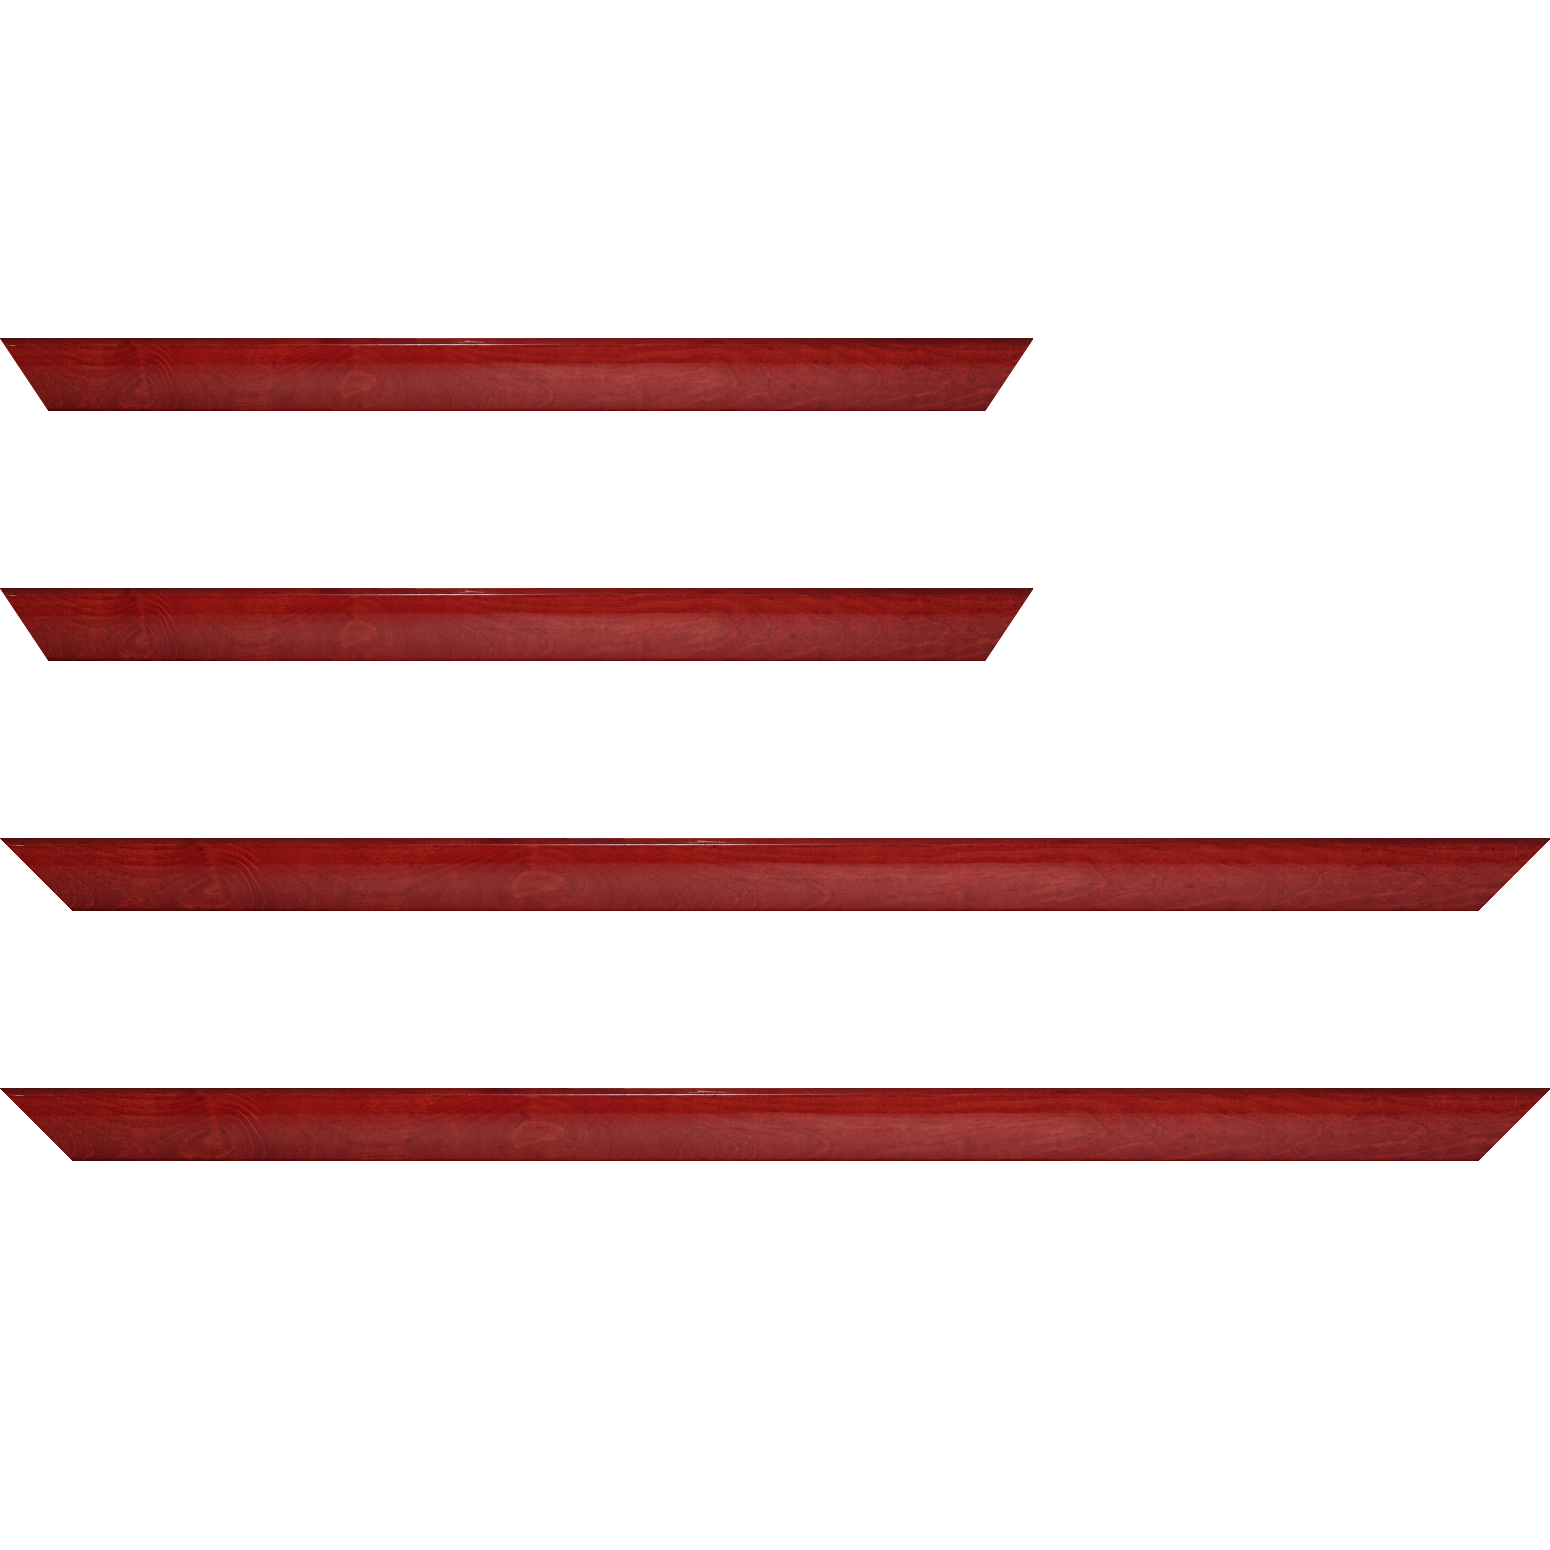 Baguette bois profil arrondi en pente plongeant largeur 2.4cm couleur rouge cerise finition vernis brillant,veine du bois  apparent (pin) , - 59.4x84.1